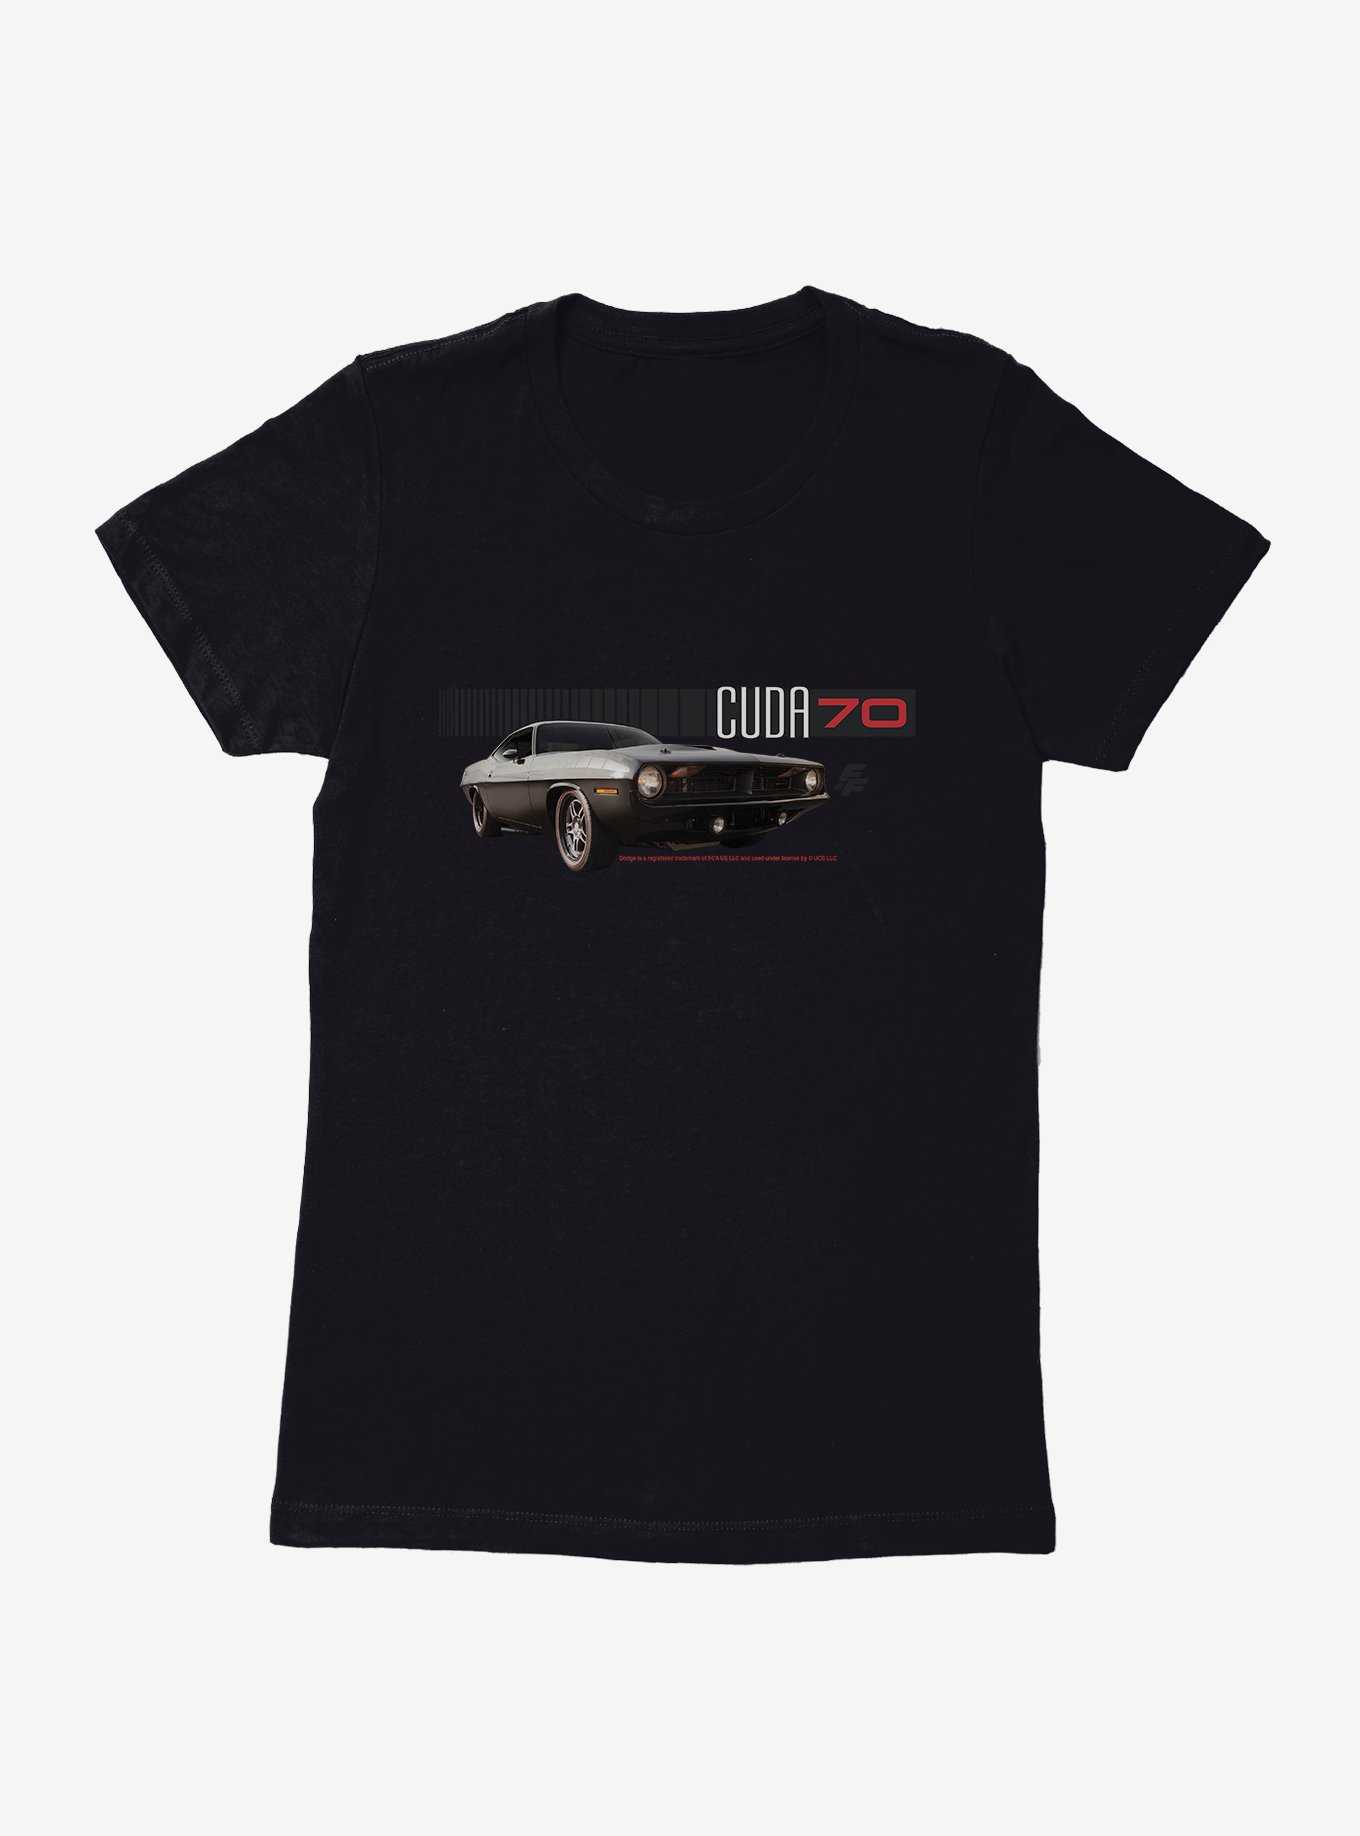 Fast & Furious 'Cuda 1970 Womens T-Shirt, , hi-res